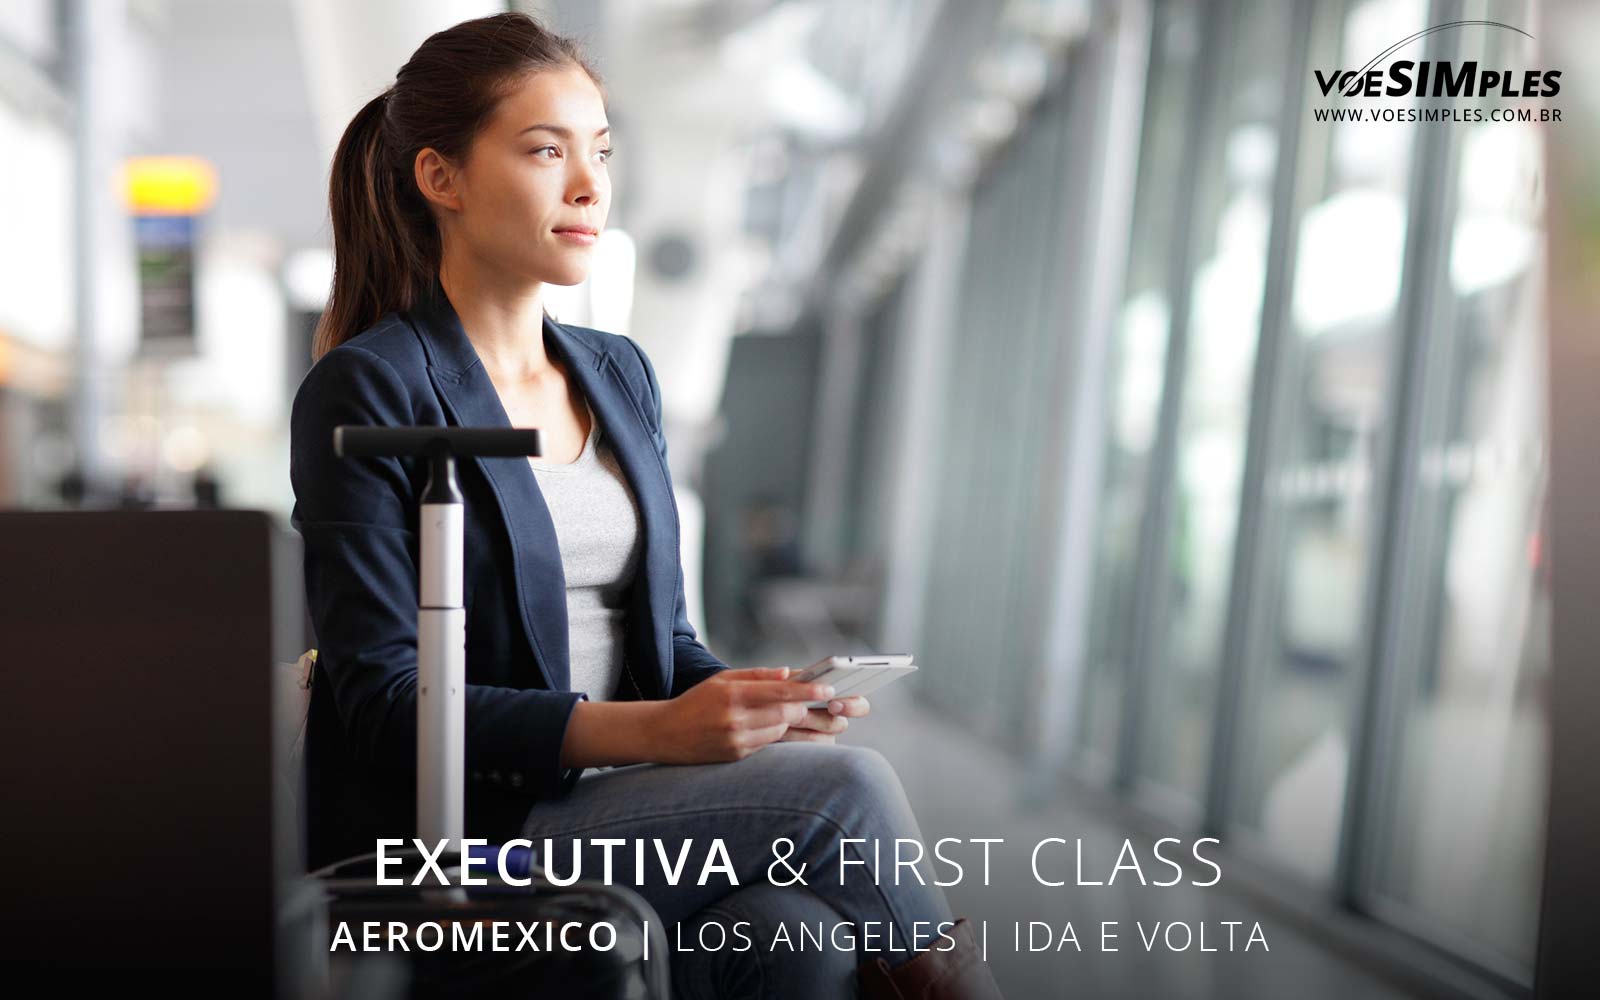 Passagem aérea executiva Aeromexico